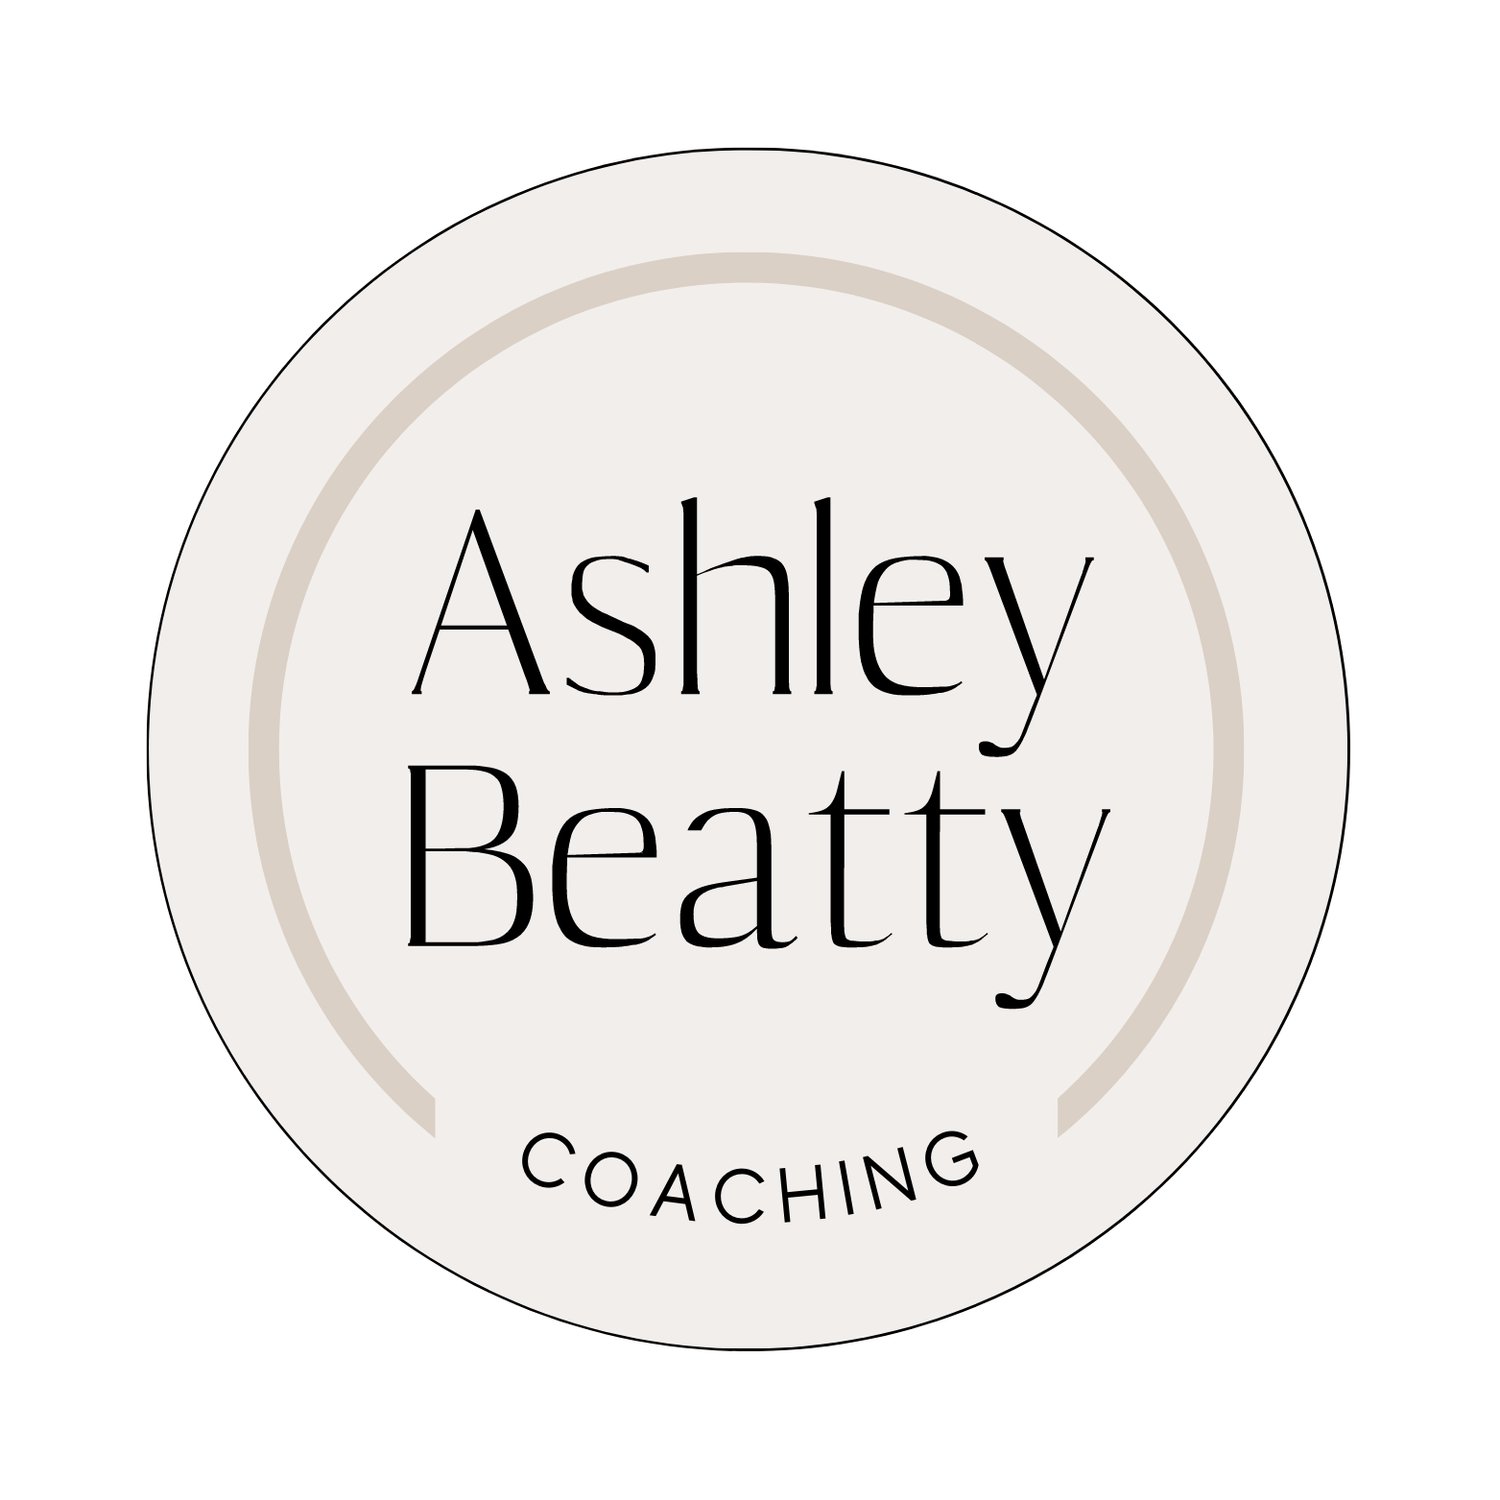 Ashley Beatty Coaching